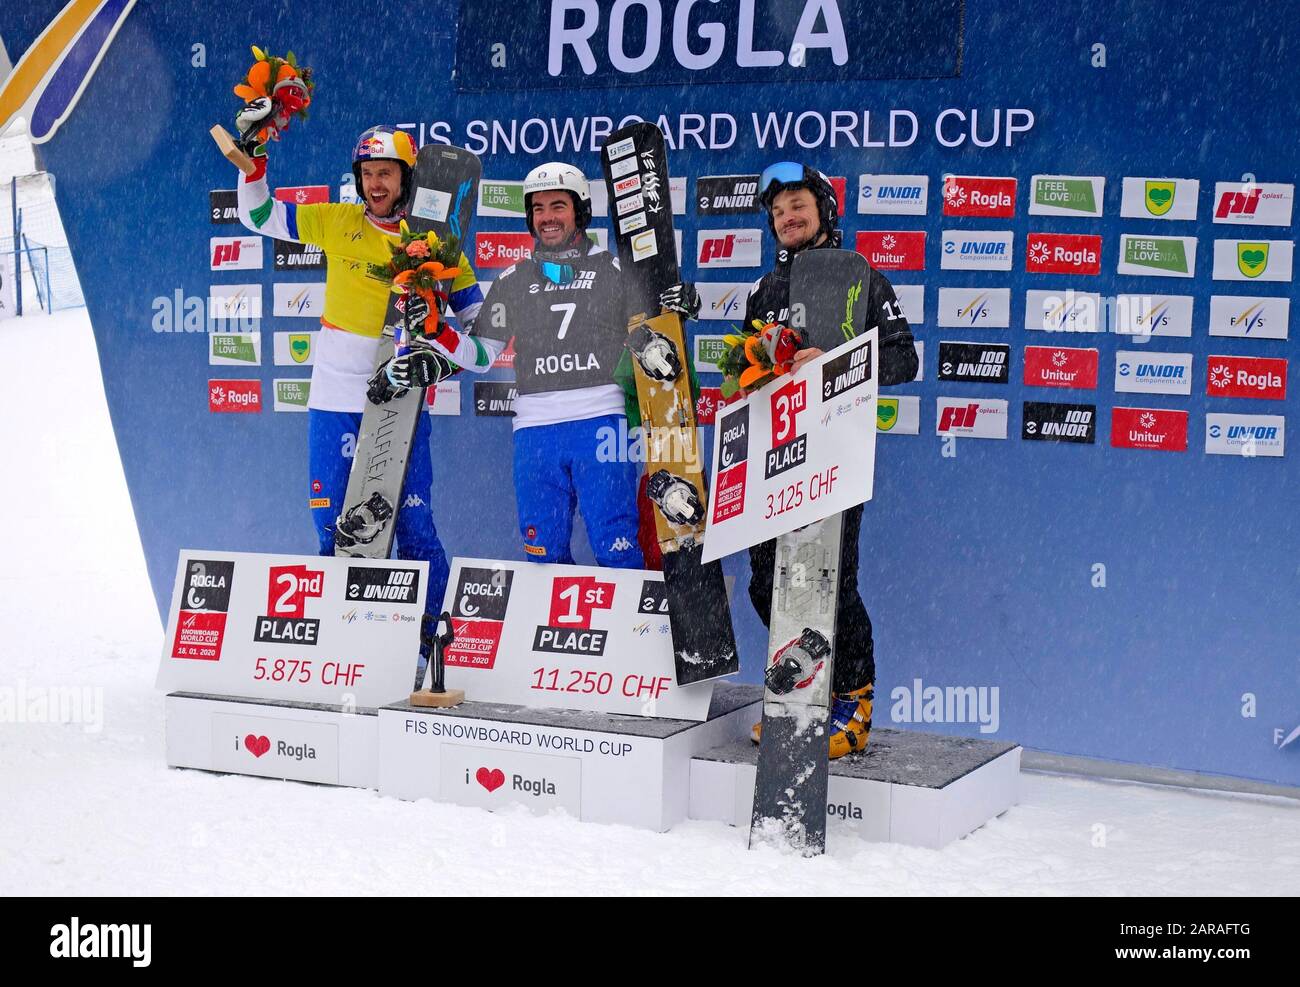 Snowboard paralelo slalom ganadores de hombres en competición para LA COPA DEL MUNDO 2020. Rogla, Eslovenia. 1. Edwin Corrati (Ita); 2. Roland Fischnaller (Ita); 3. Vic Foto de stock